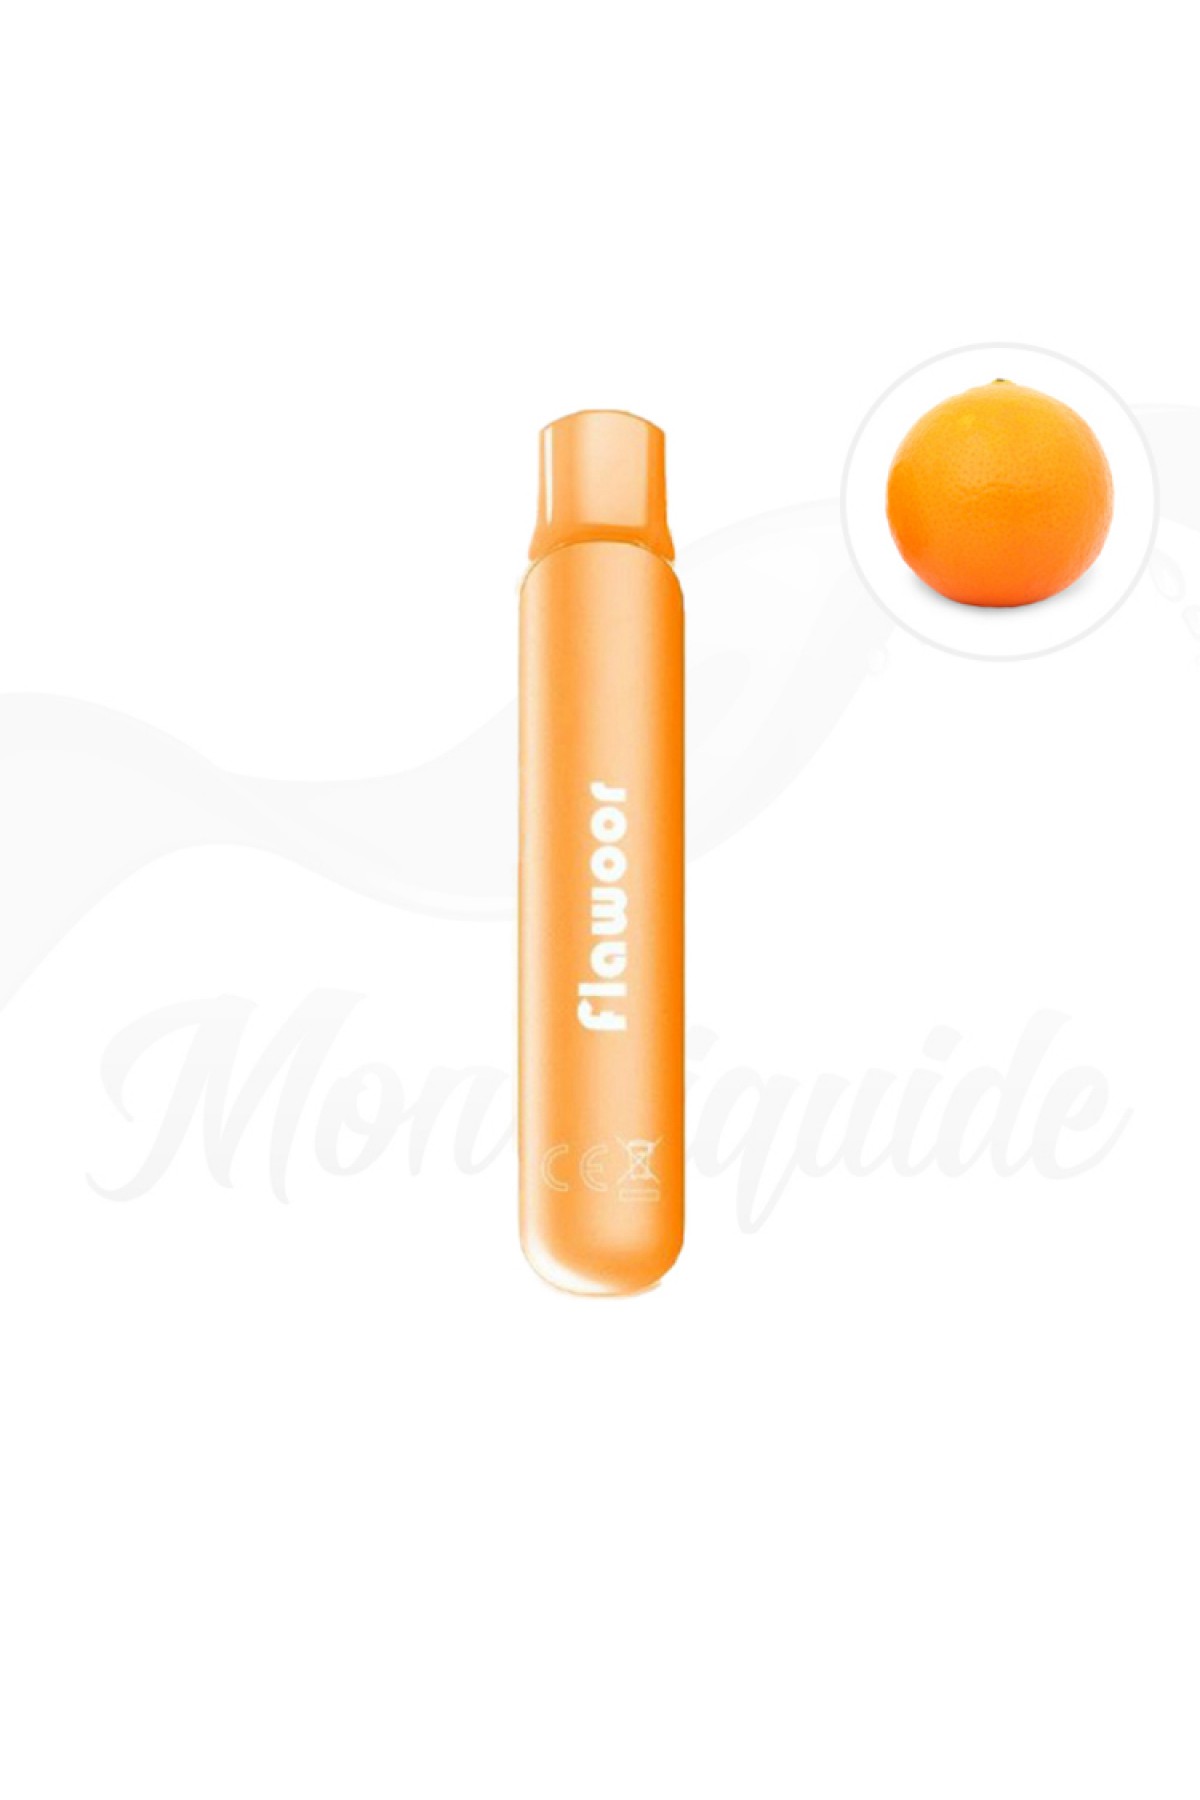 Flawoor Mate - Orange Fantastique 600 Puff Kit